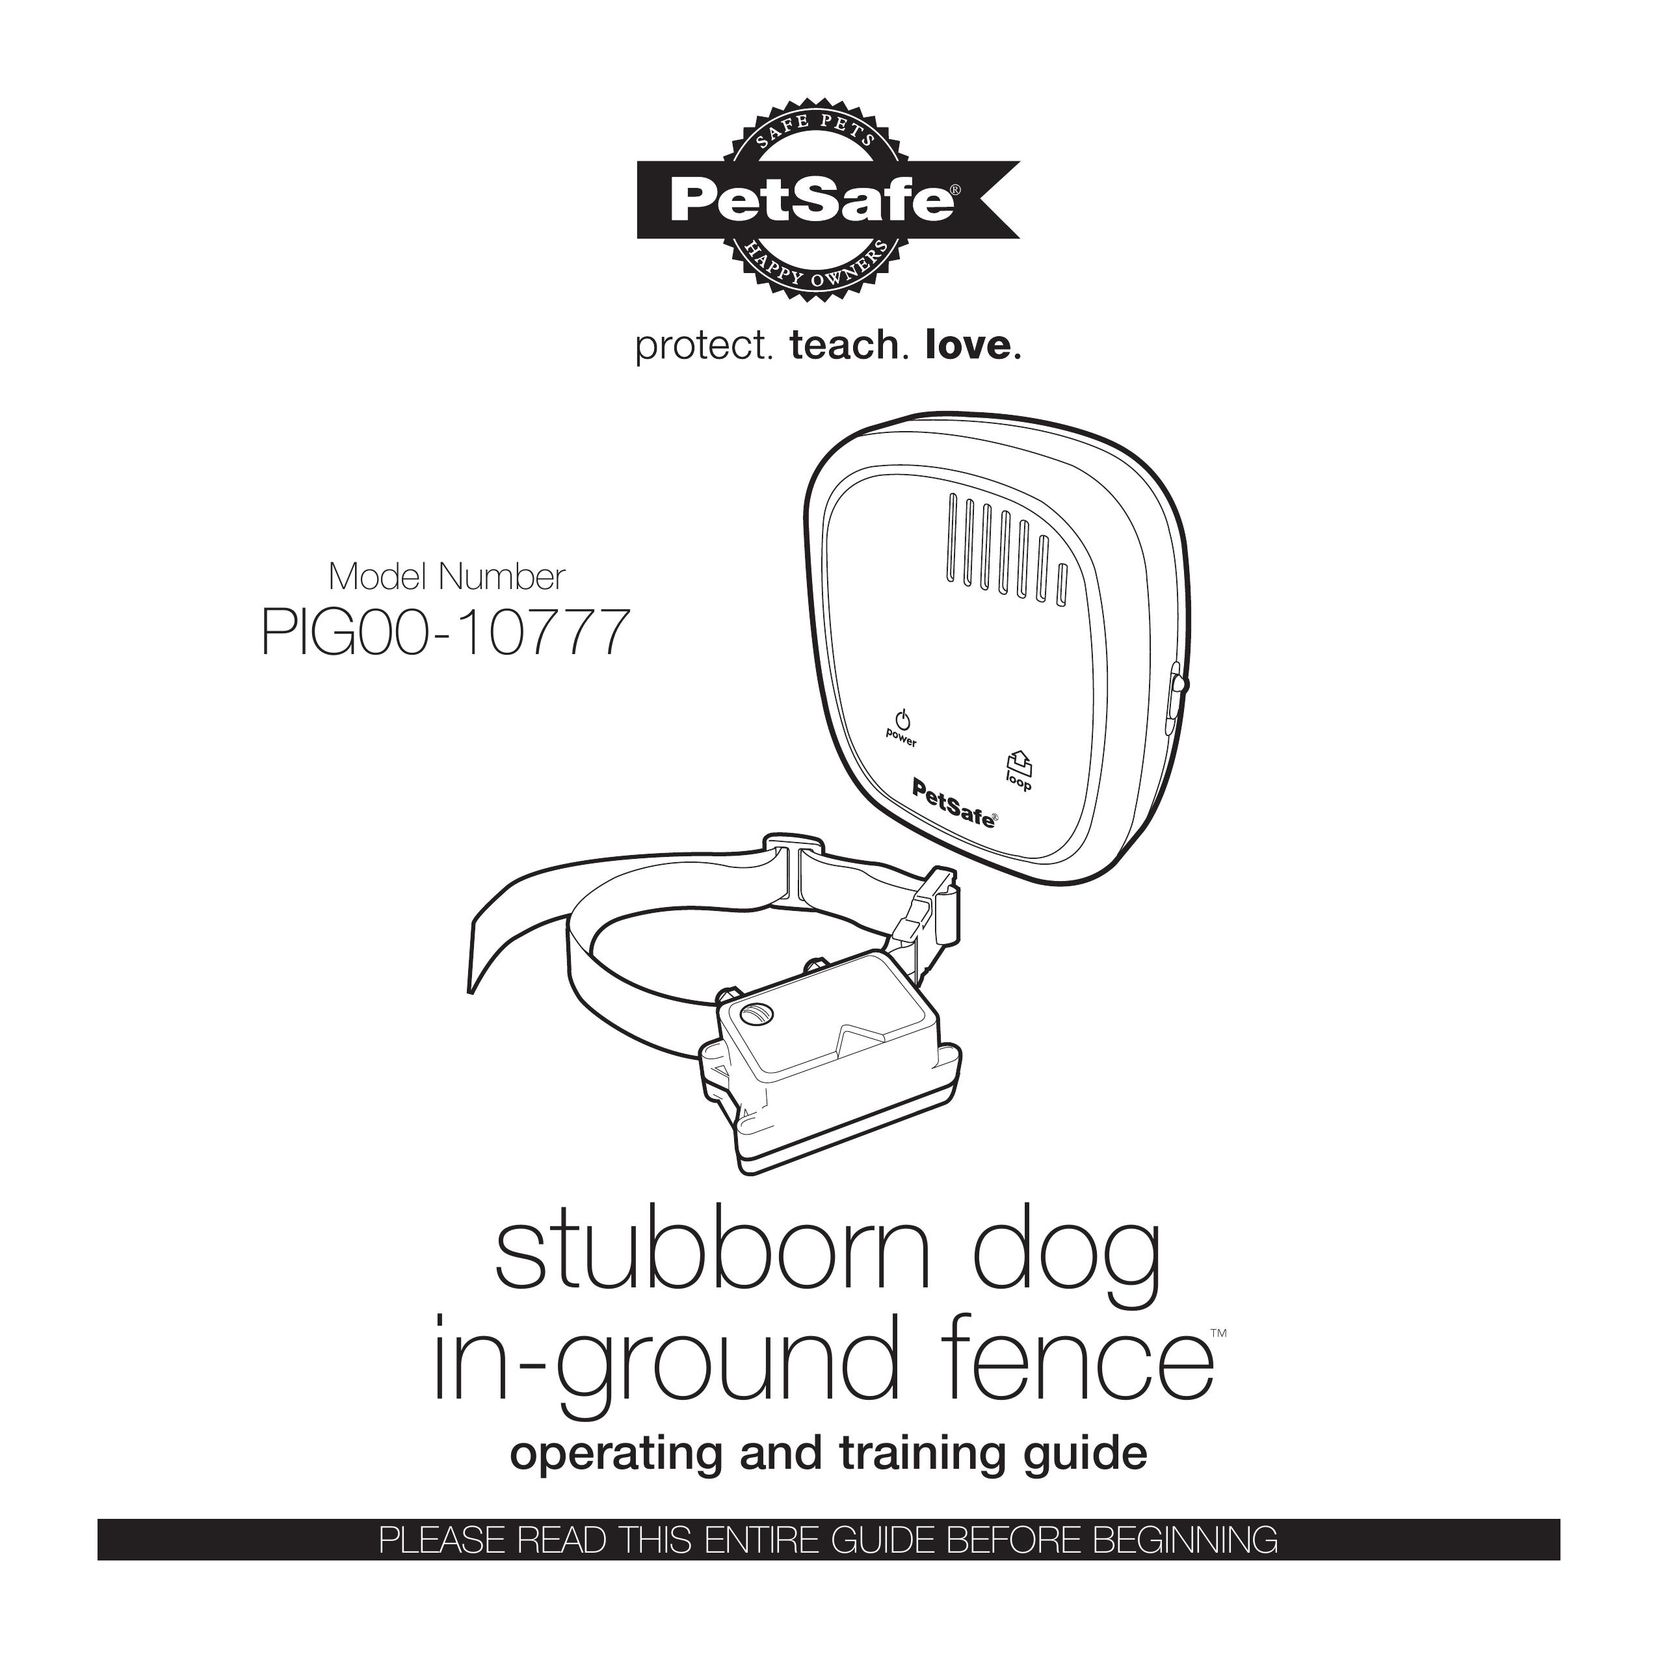 Petsafe PIG00-10777 Pet Fence User Manual